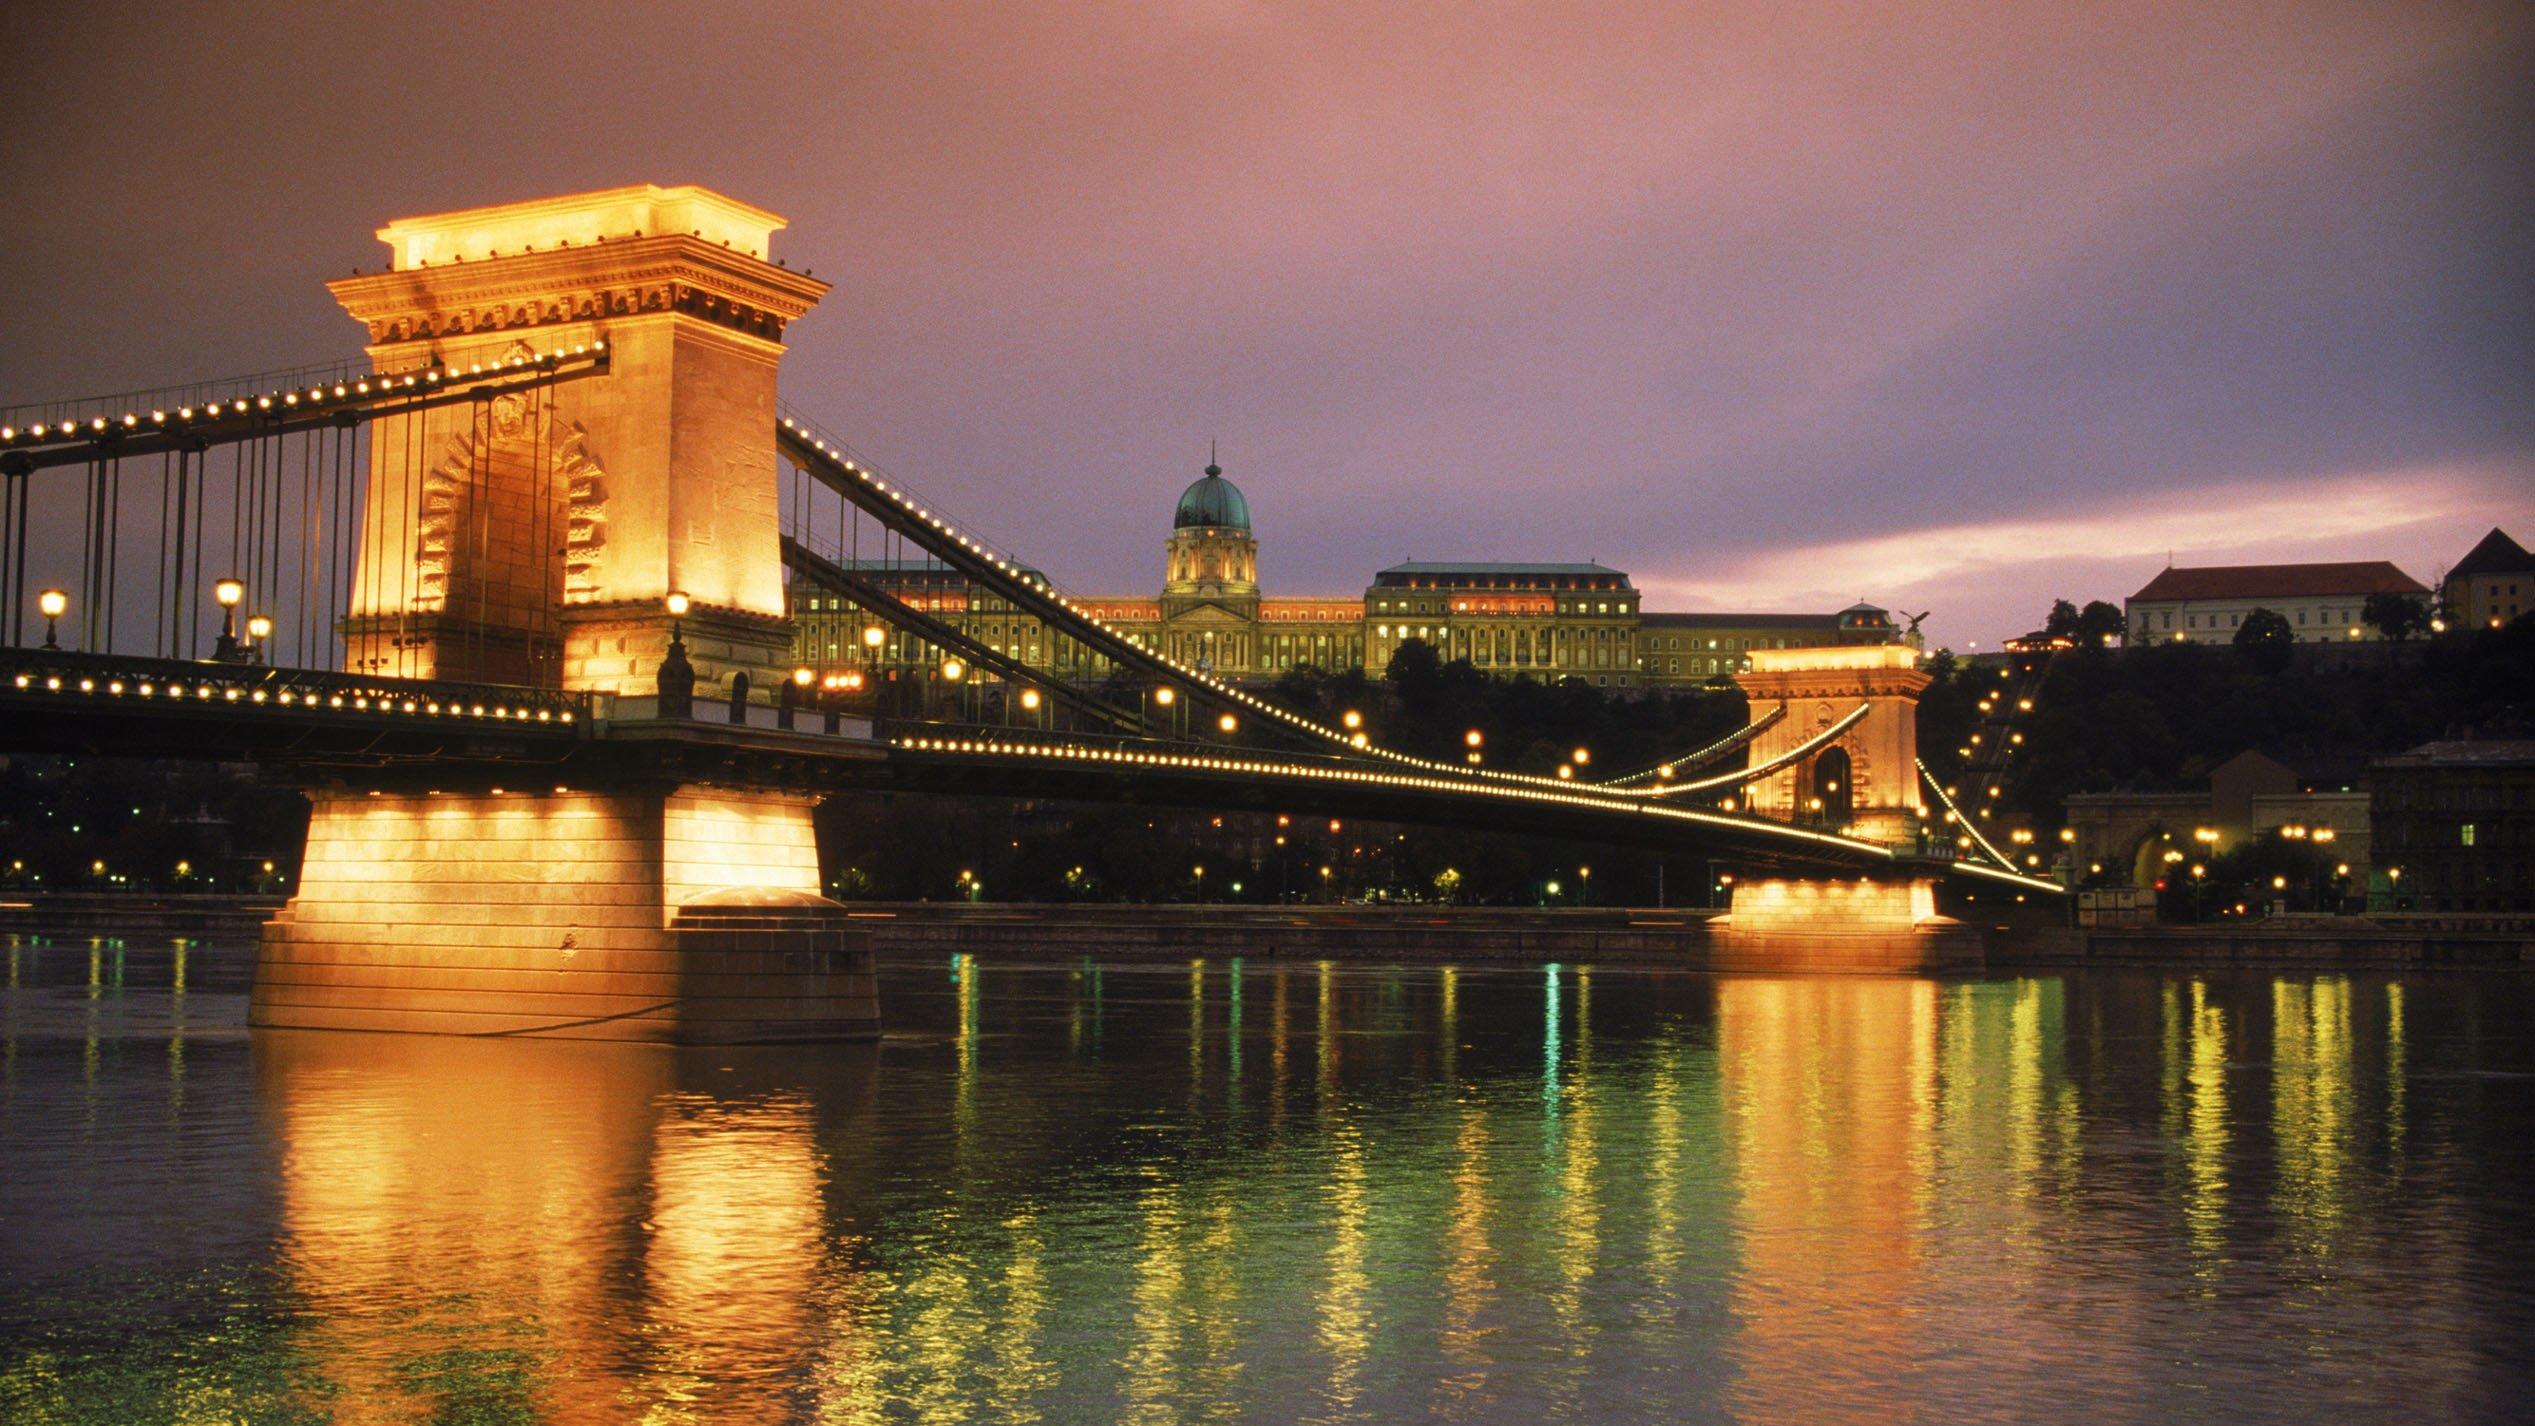 Die Kettenbrücke in Budapest bei Abendlicht. Undatiert. ### Hungary: Budapest - Chain Bridge ## The Chain Bridge in Budapest in the light of the evening hour. Undated picture. #